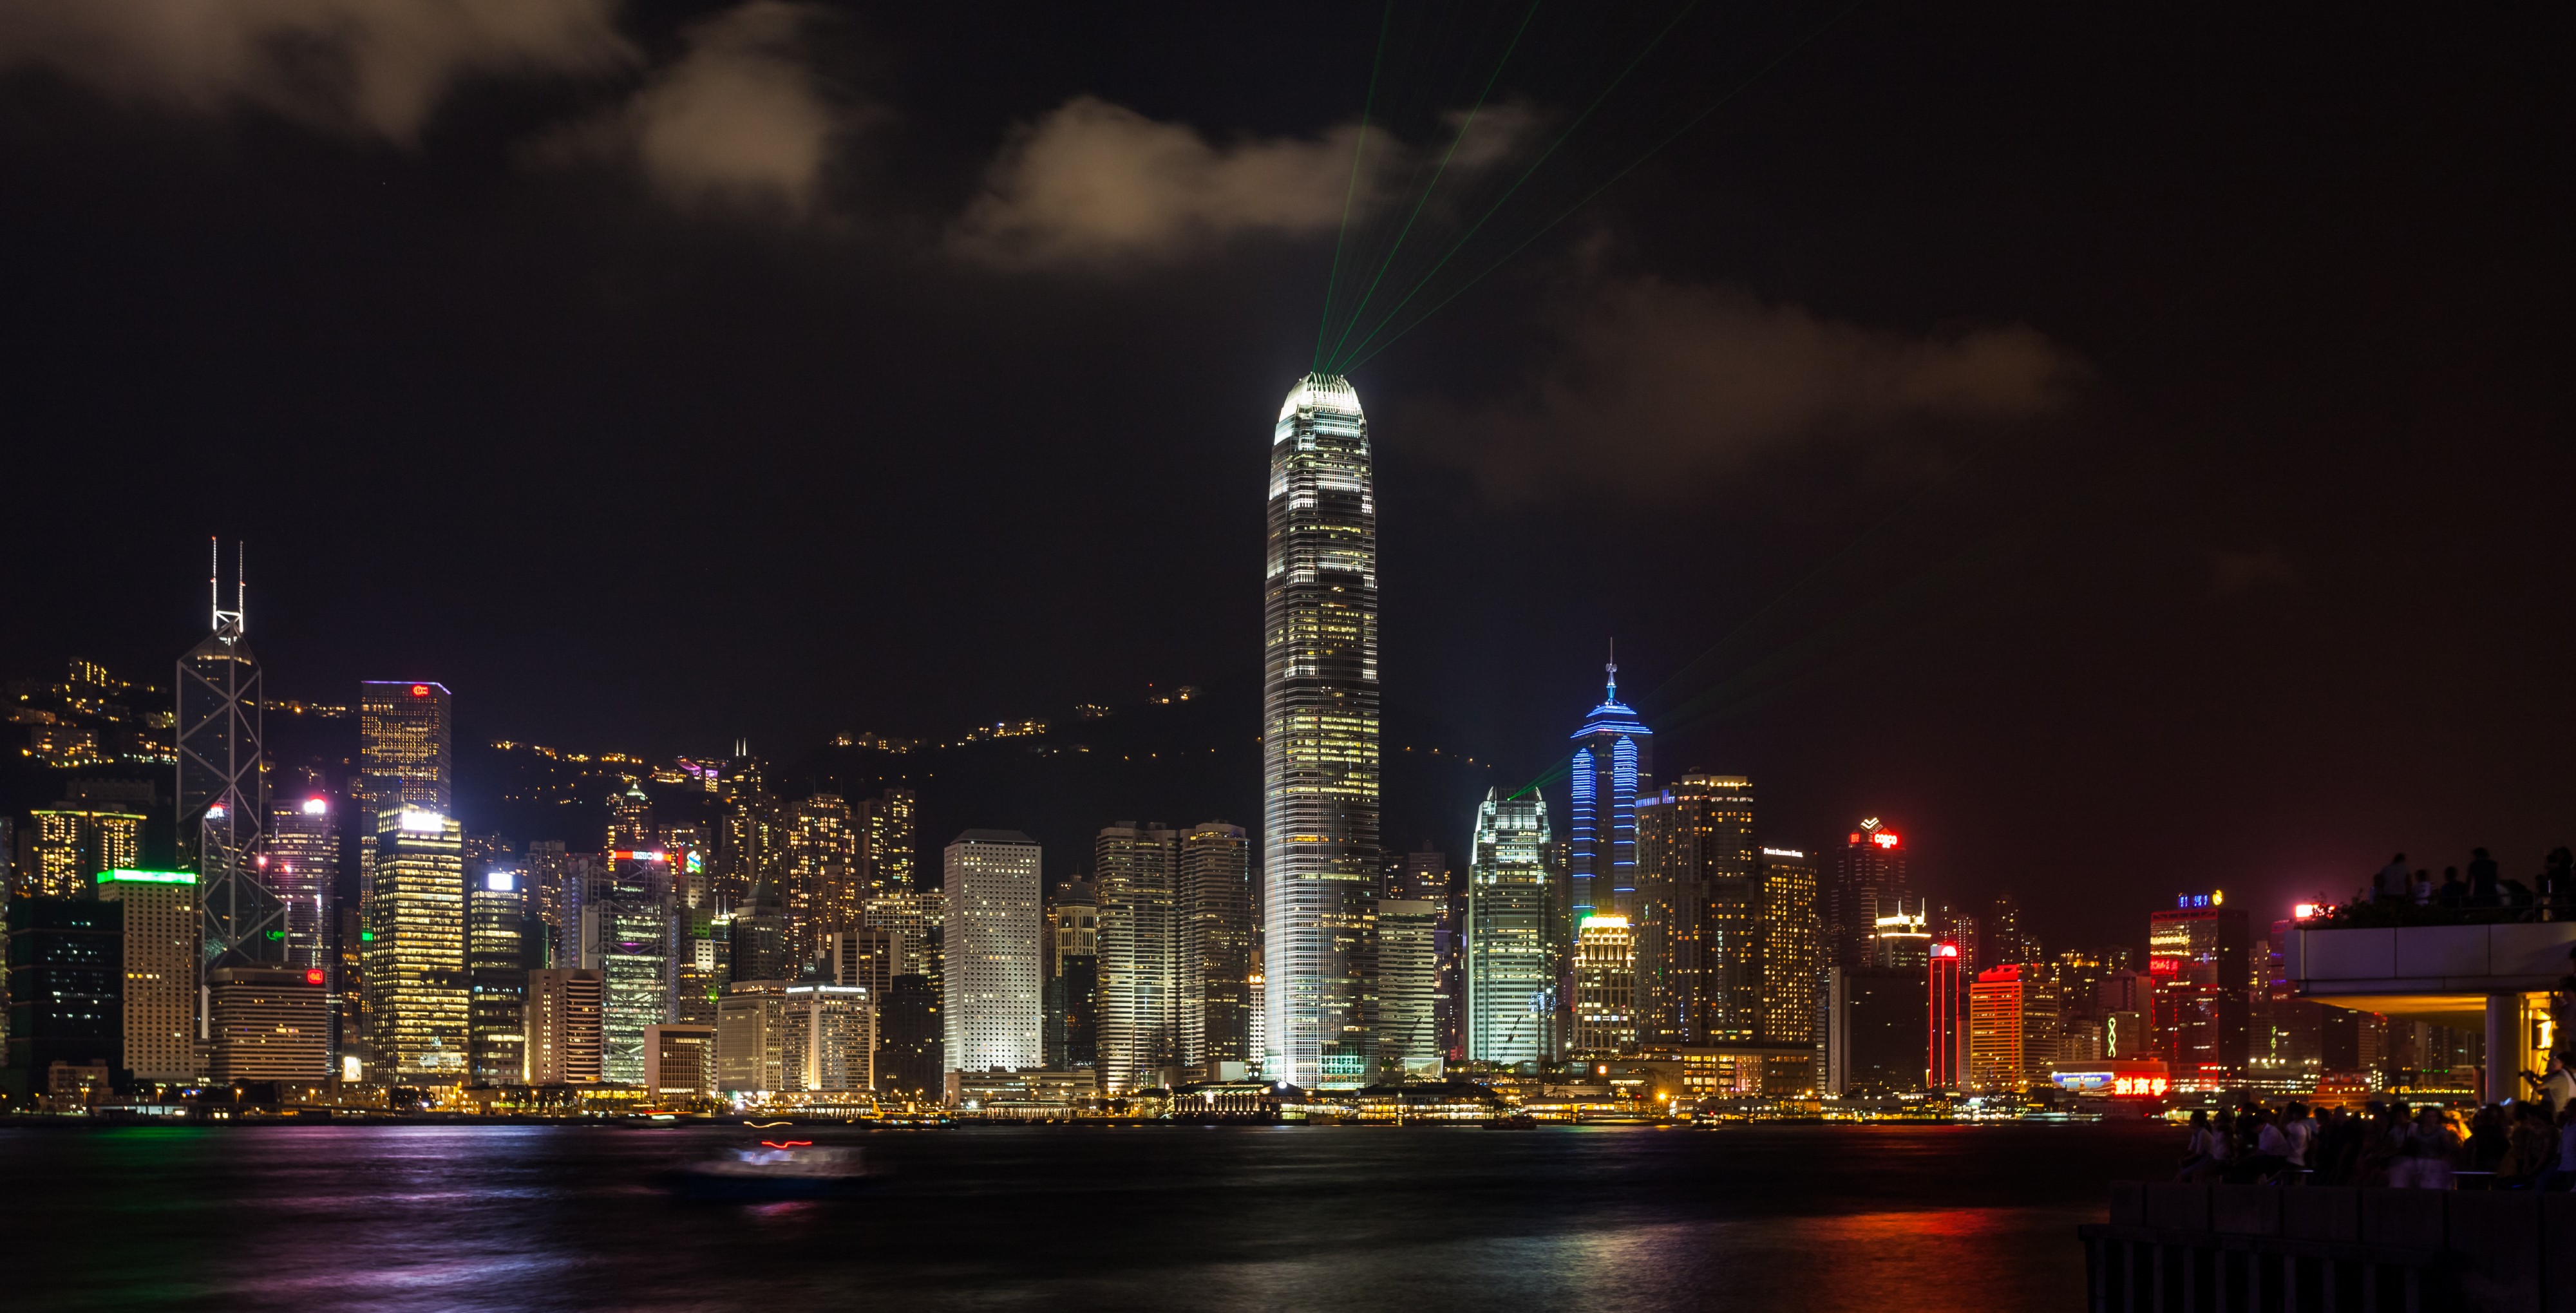 Vista del Puerto de Victoria desde Kowloon, Hong Kong, 2013-08-11, DD 15